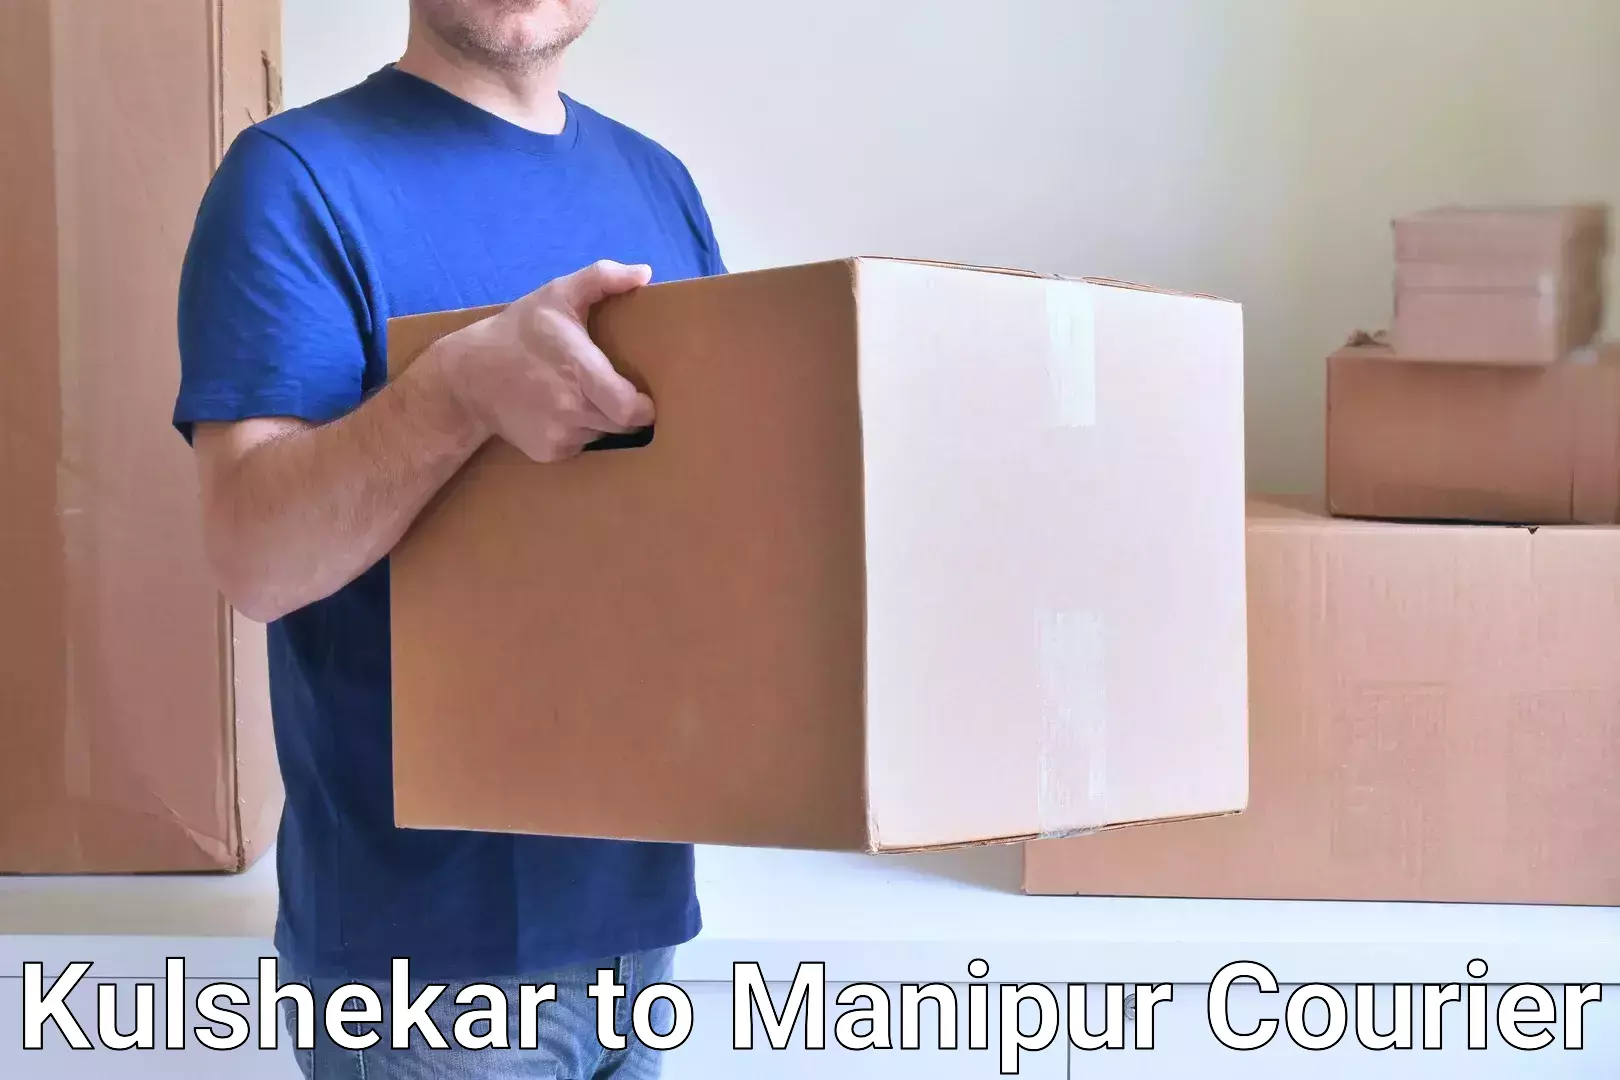 High-capacity parcel service Kulshekar to Manipur